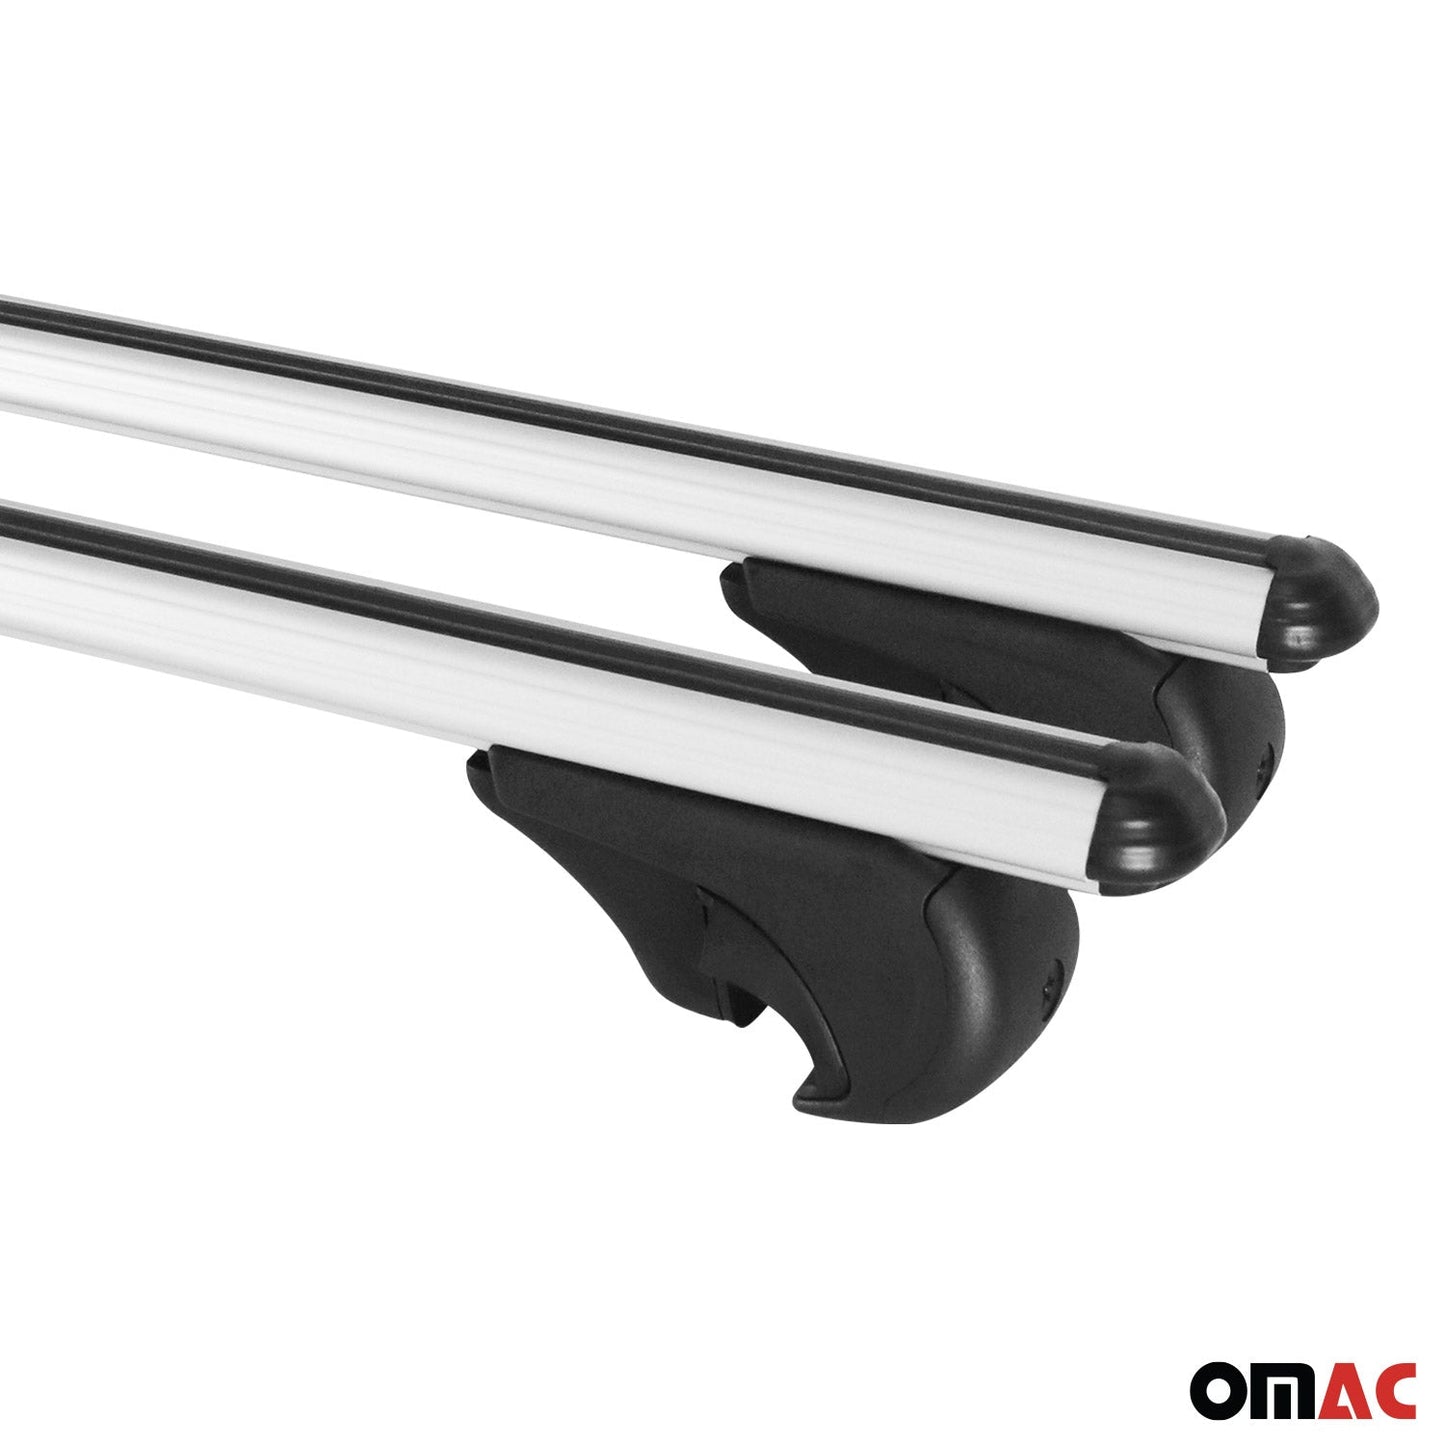 OMAC Lockable Roof Rack Cross Bars Carrier for Chevrolet Uplander 2005-2009 Gray 16139696929M